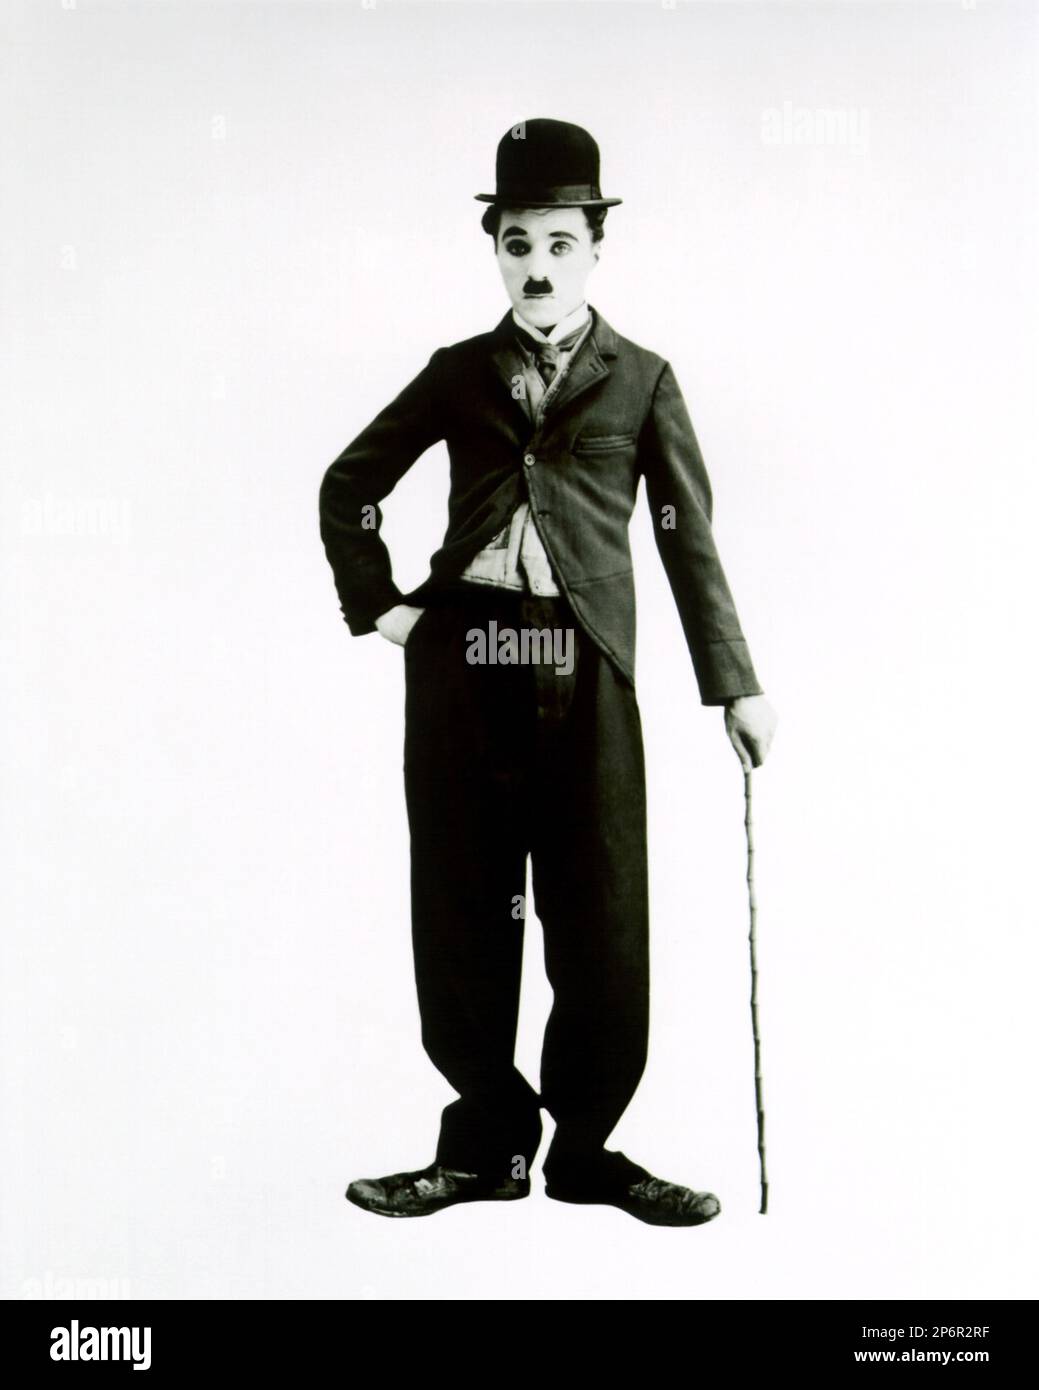 1915 : The silent movie actor and movie director CHARLES CHAPLIN ( 1889 - 1977 ) as CHARLOT - CINEMA - FILM - portrait - ritratto - hat - cappello - regista cinematografico - attore - attrice - comico - tie - cravatta - collar - colletto  ---- Archivio GBB      Archivio Stock Photo